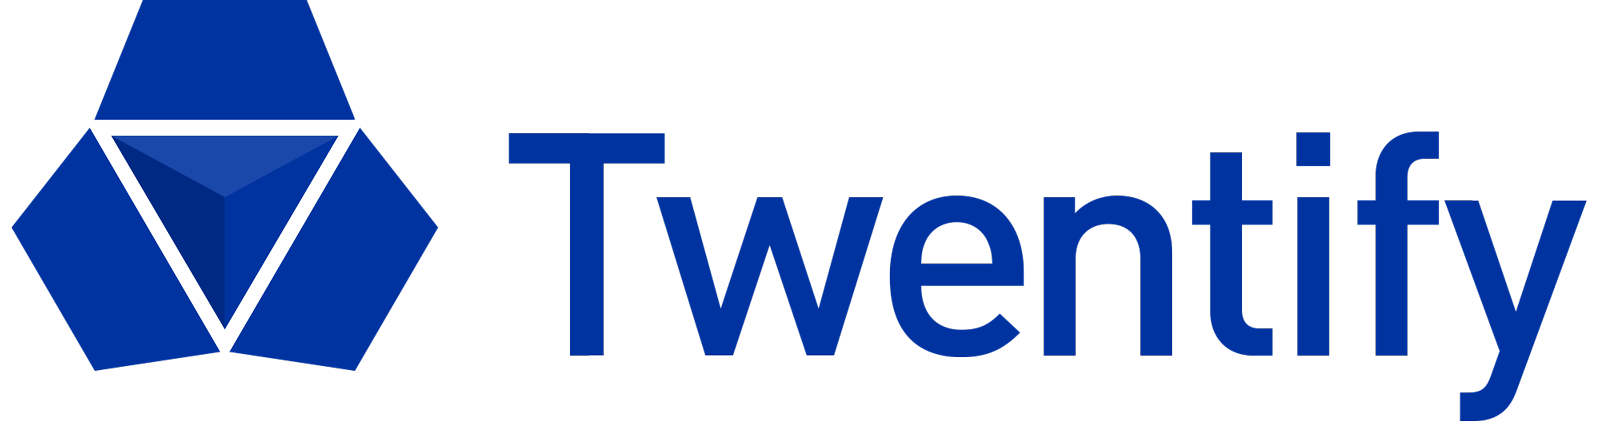 Twentify_Logo_Blue